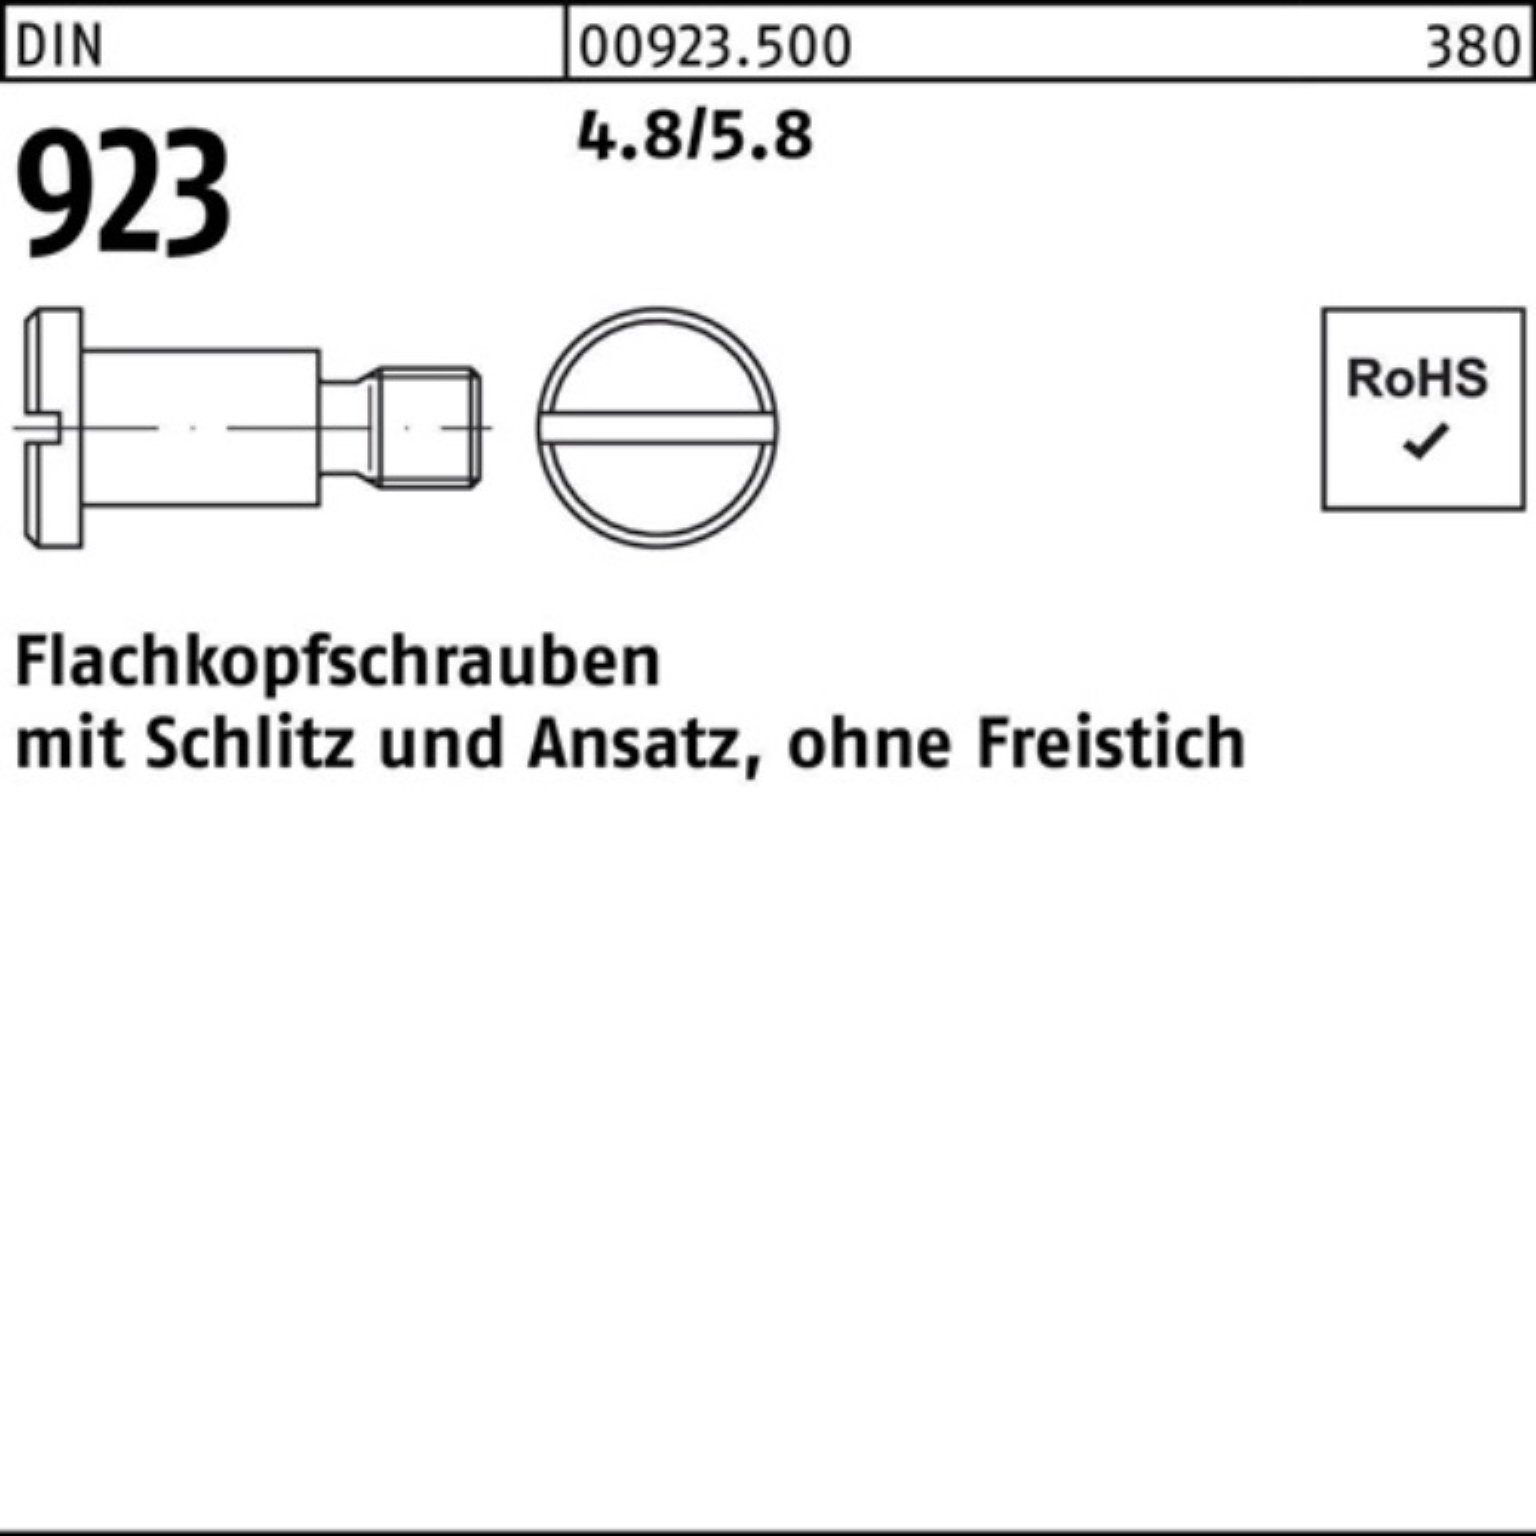 Reyher Schraube 100er Pack DIN M5x16x 923 4.8/5.8 Flachkopfschraube Schlitz/Ansatz 7,0